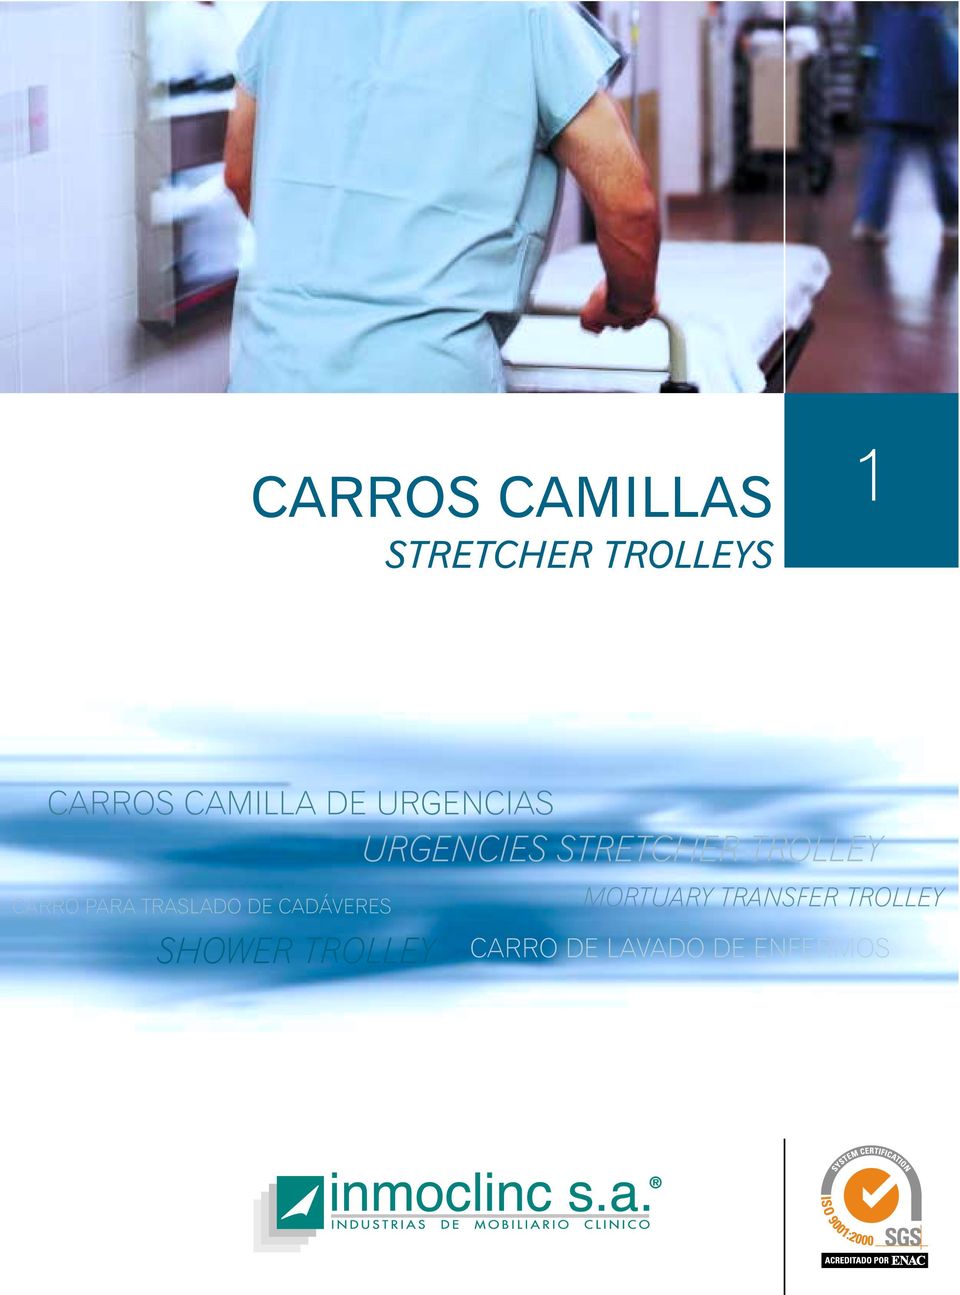 CARRO PARA TRASLADO DE CADÁVERES SHOWER TROLLEY